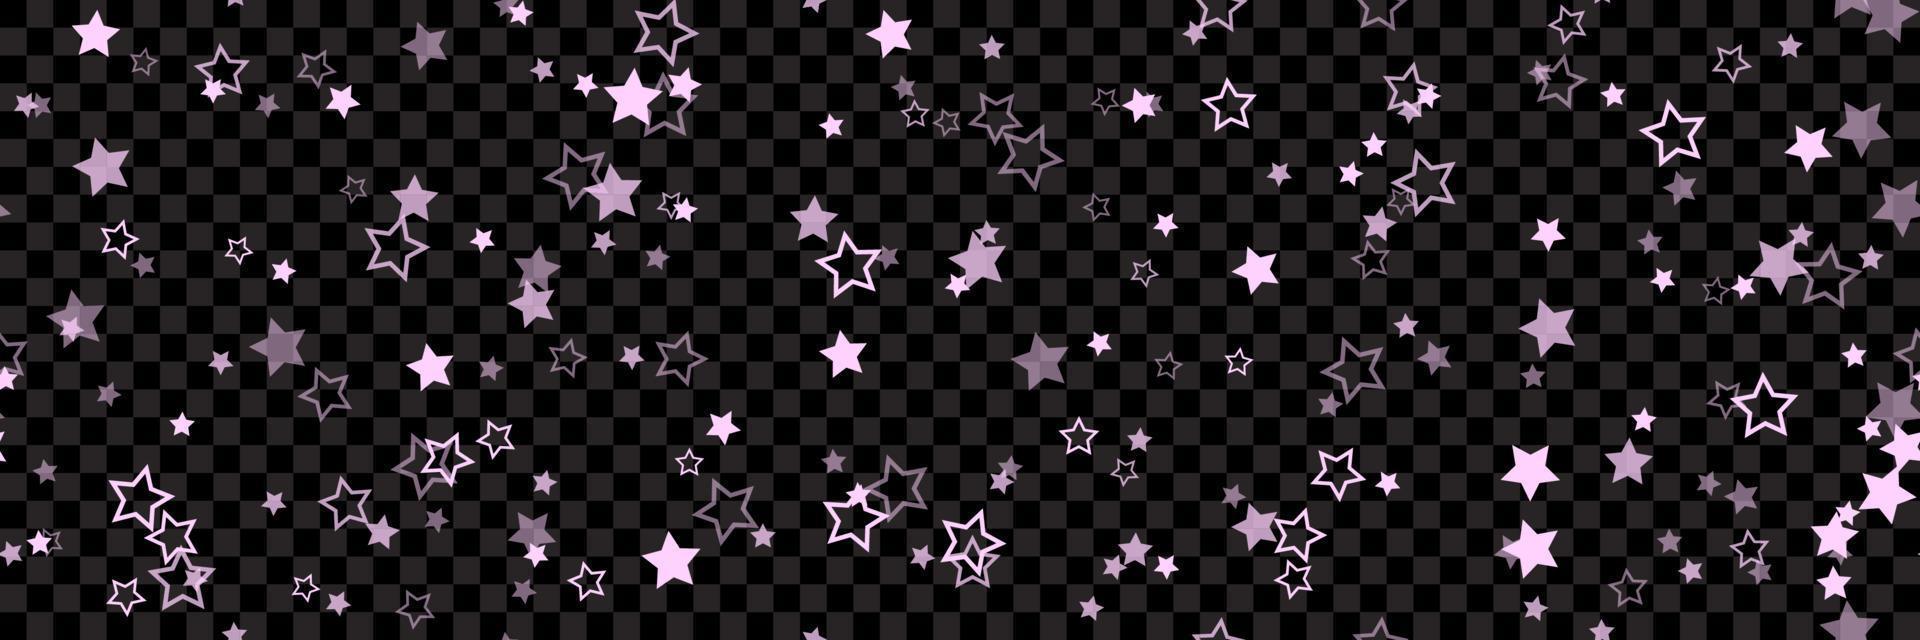 roze sterpatroon achtergrond voor brede banner. naadloze sterren achtergrond. vector illustratie